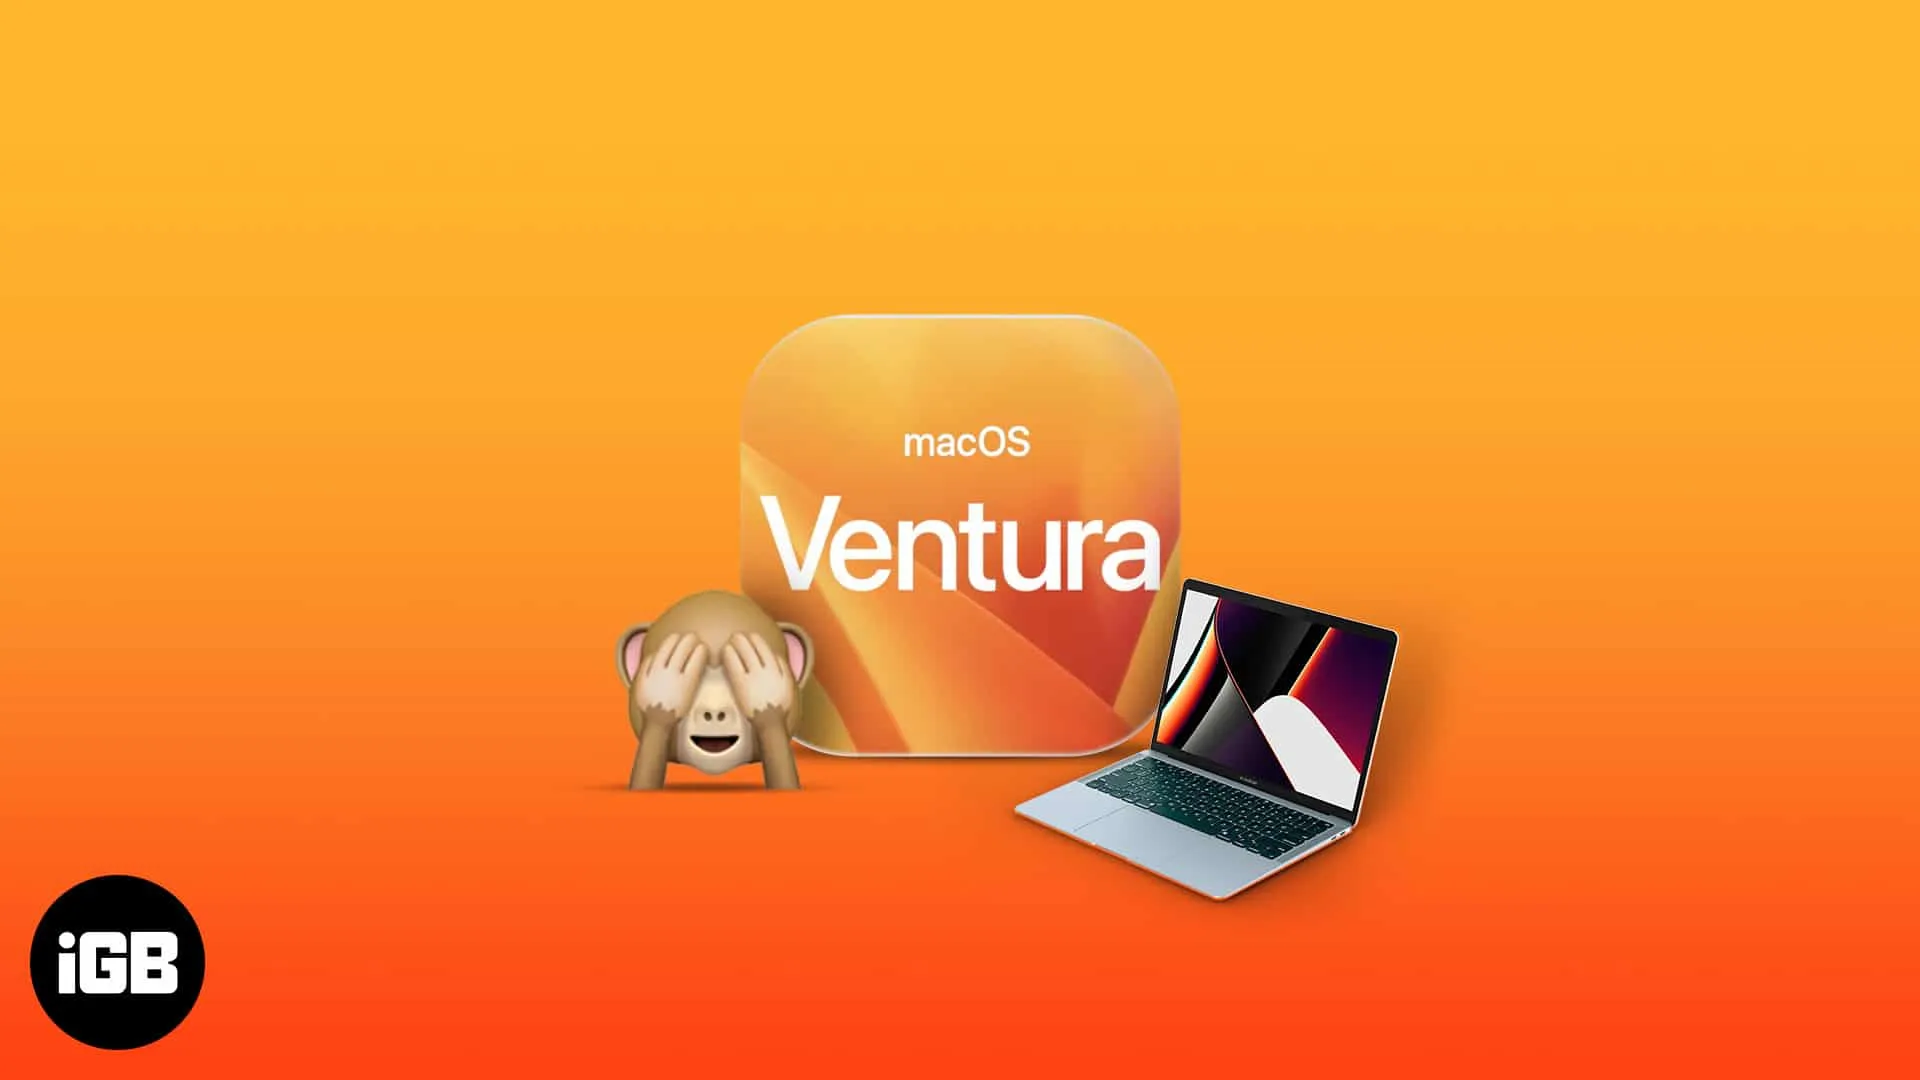 25 лучших скрытых функций macOS Ventura, о которых вы должны знать!